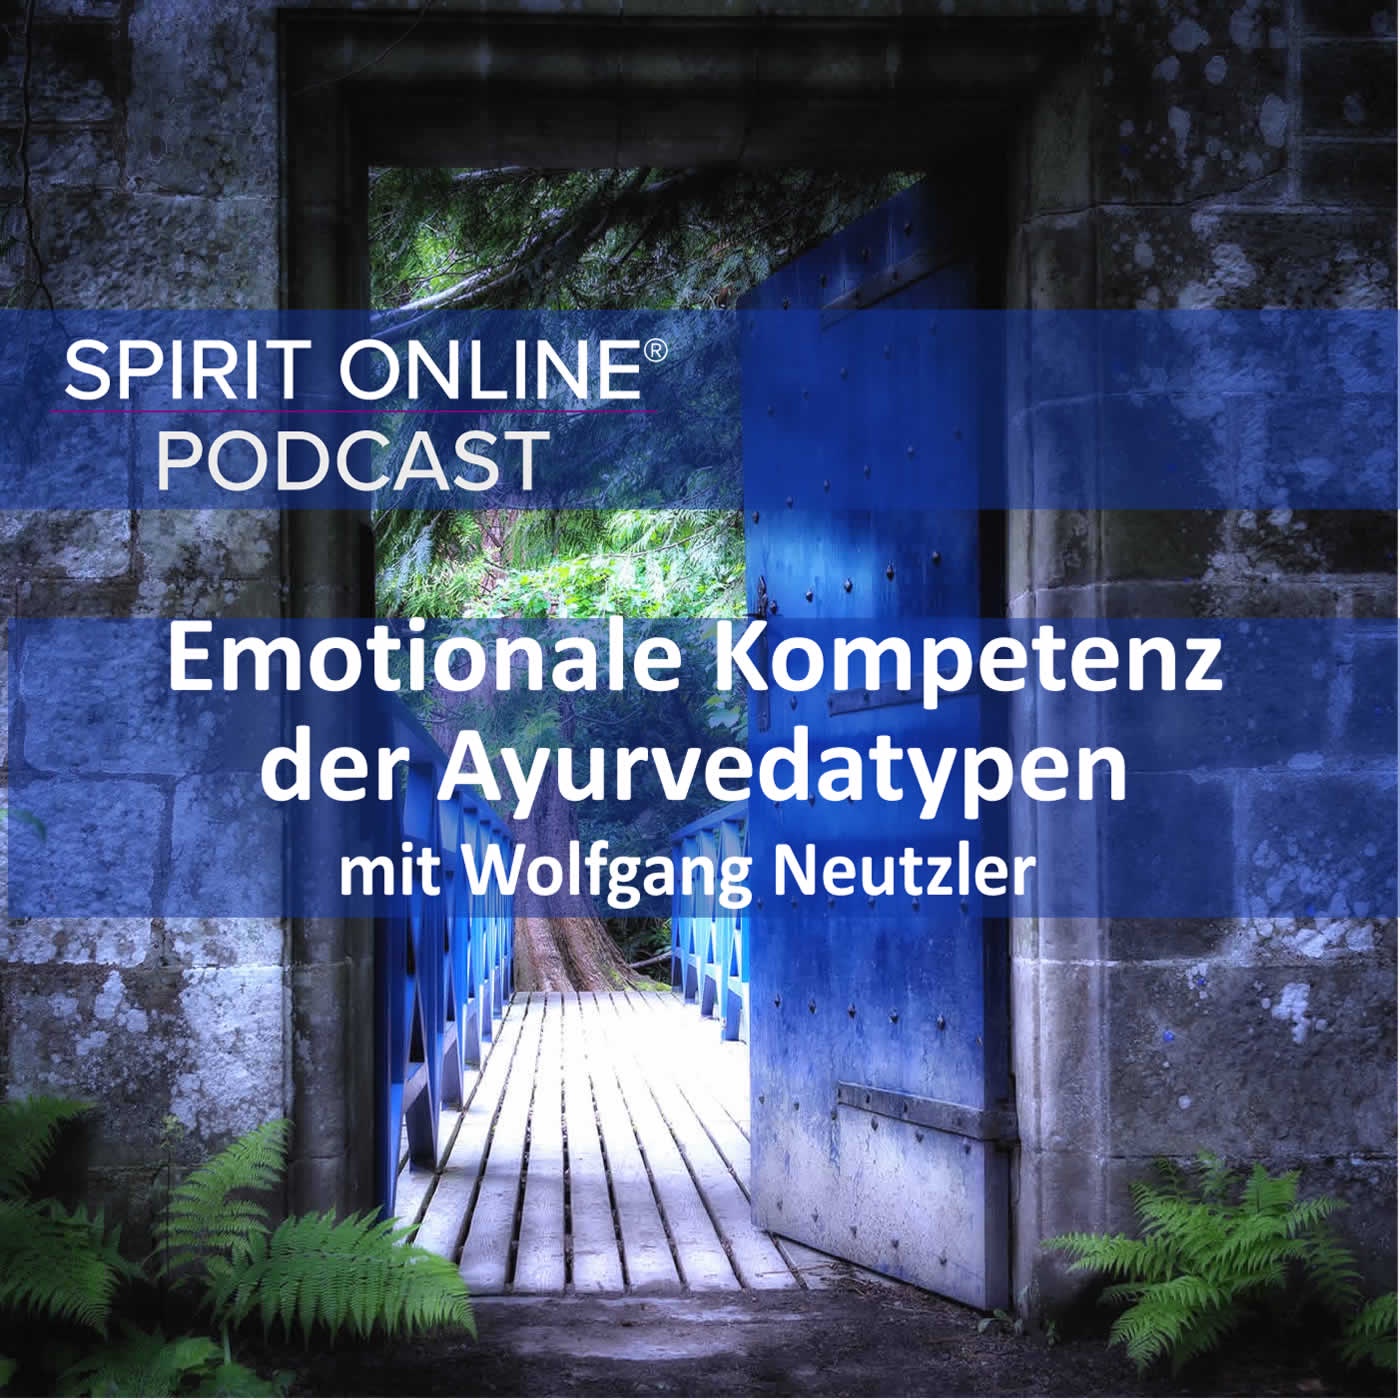 Emotionale Kompetenz der Ayurvedatypen mit Wolfgang Neutzler